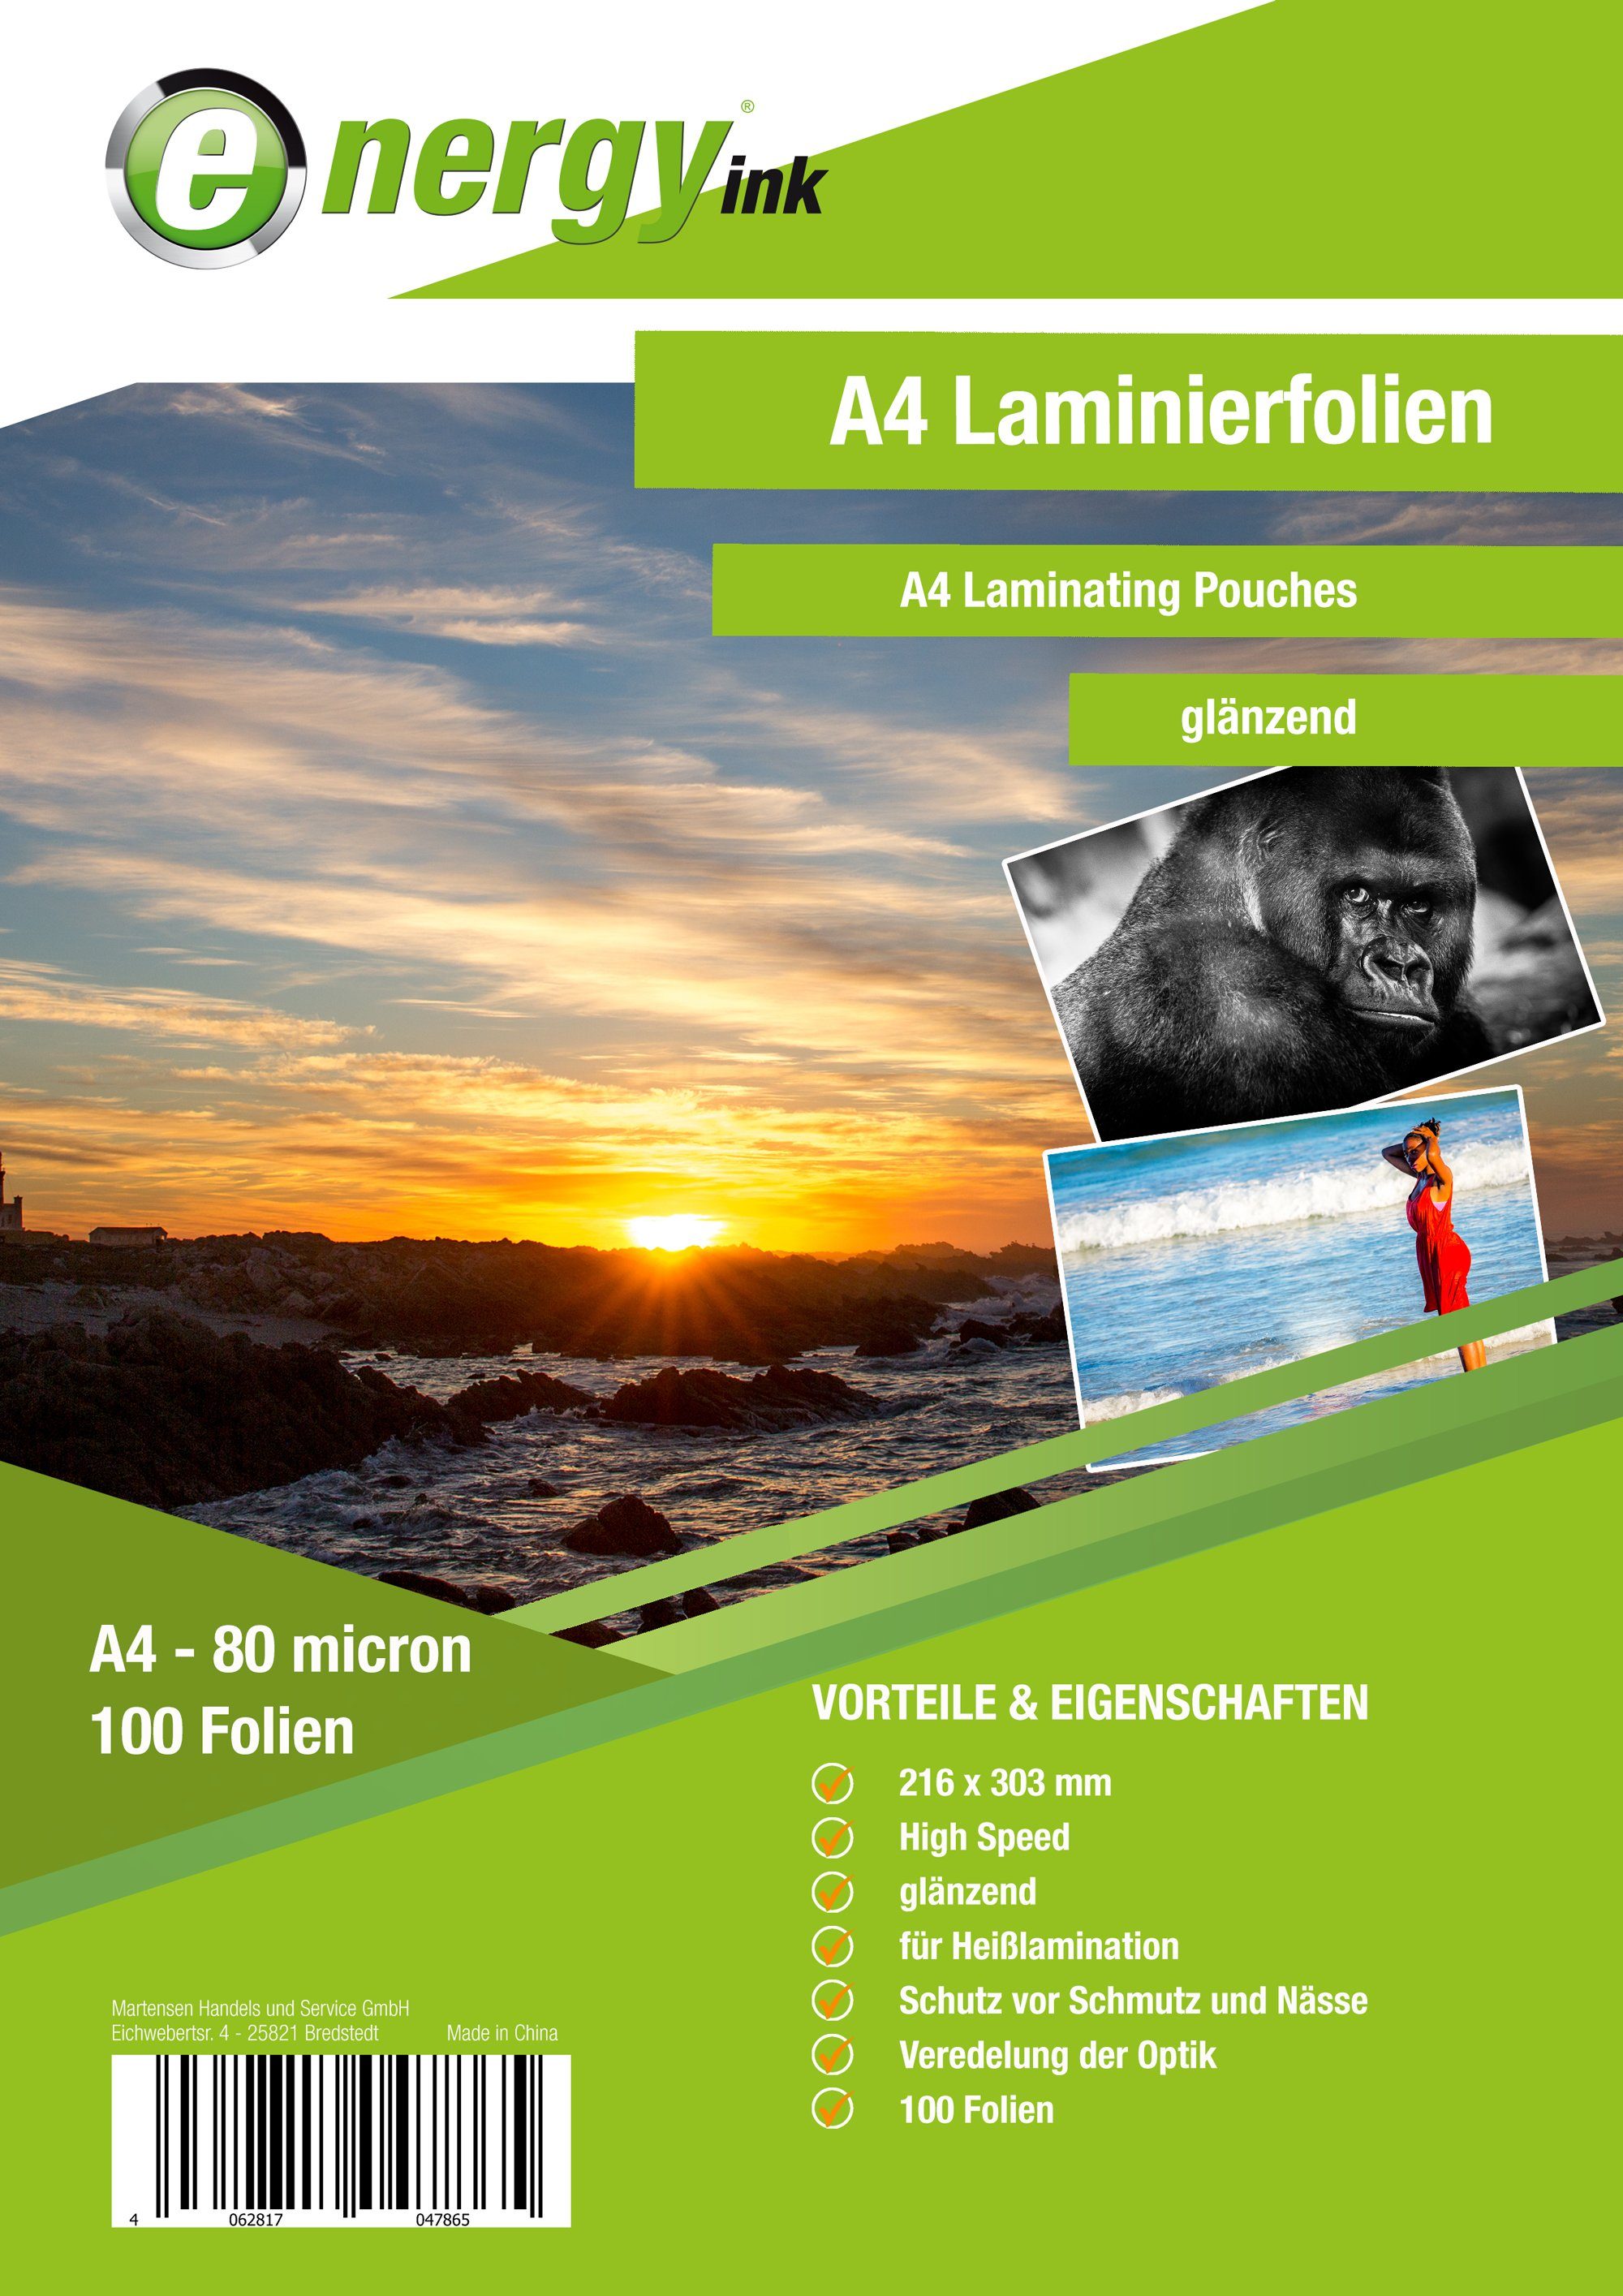 Energy-ink Laminiergerät energy ink Laminierfolie Din A4 - 80 micron . 100 Folien glänzend